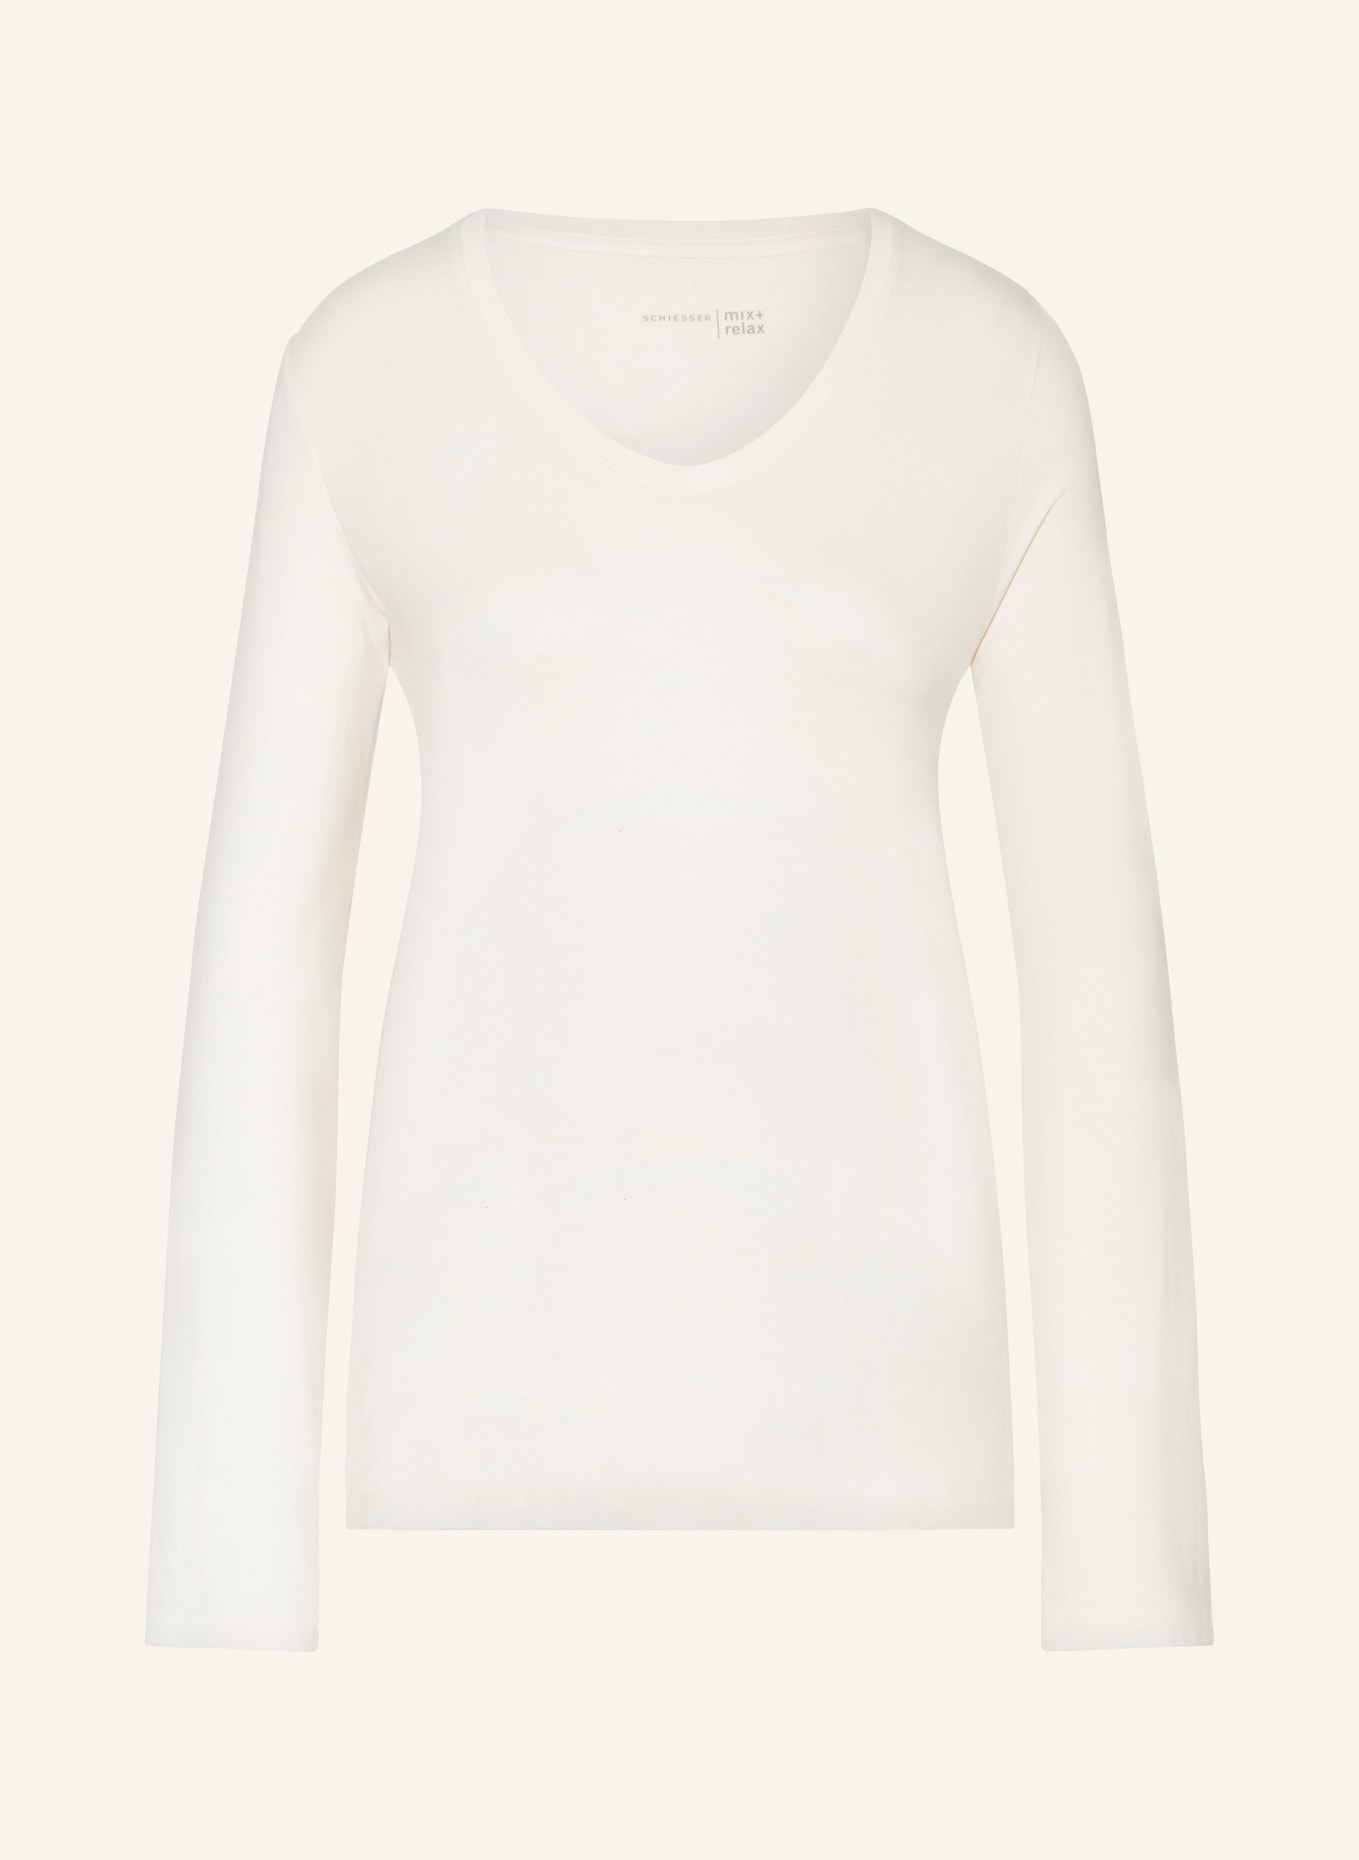 SCHIESSER Koszulka od piżamy MIX+RELAX, Kolor: KREMOWY (Obrazek 1)